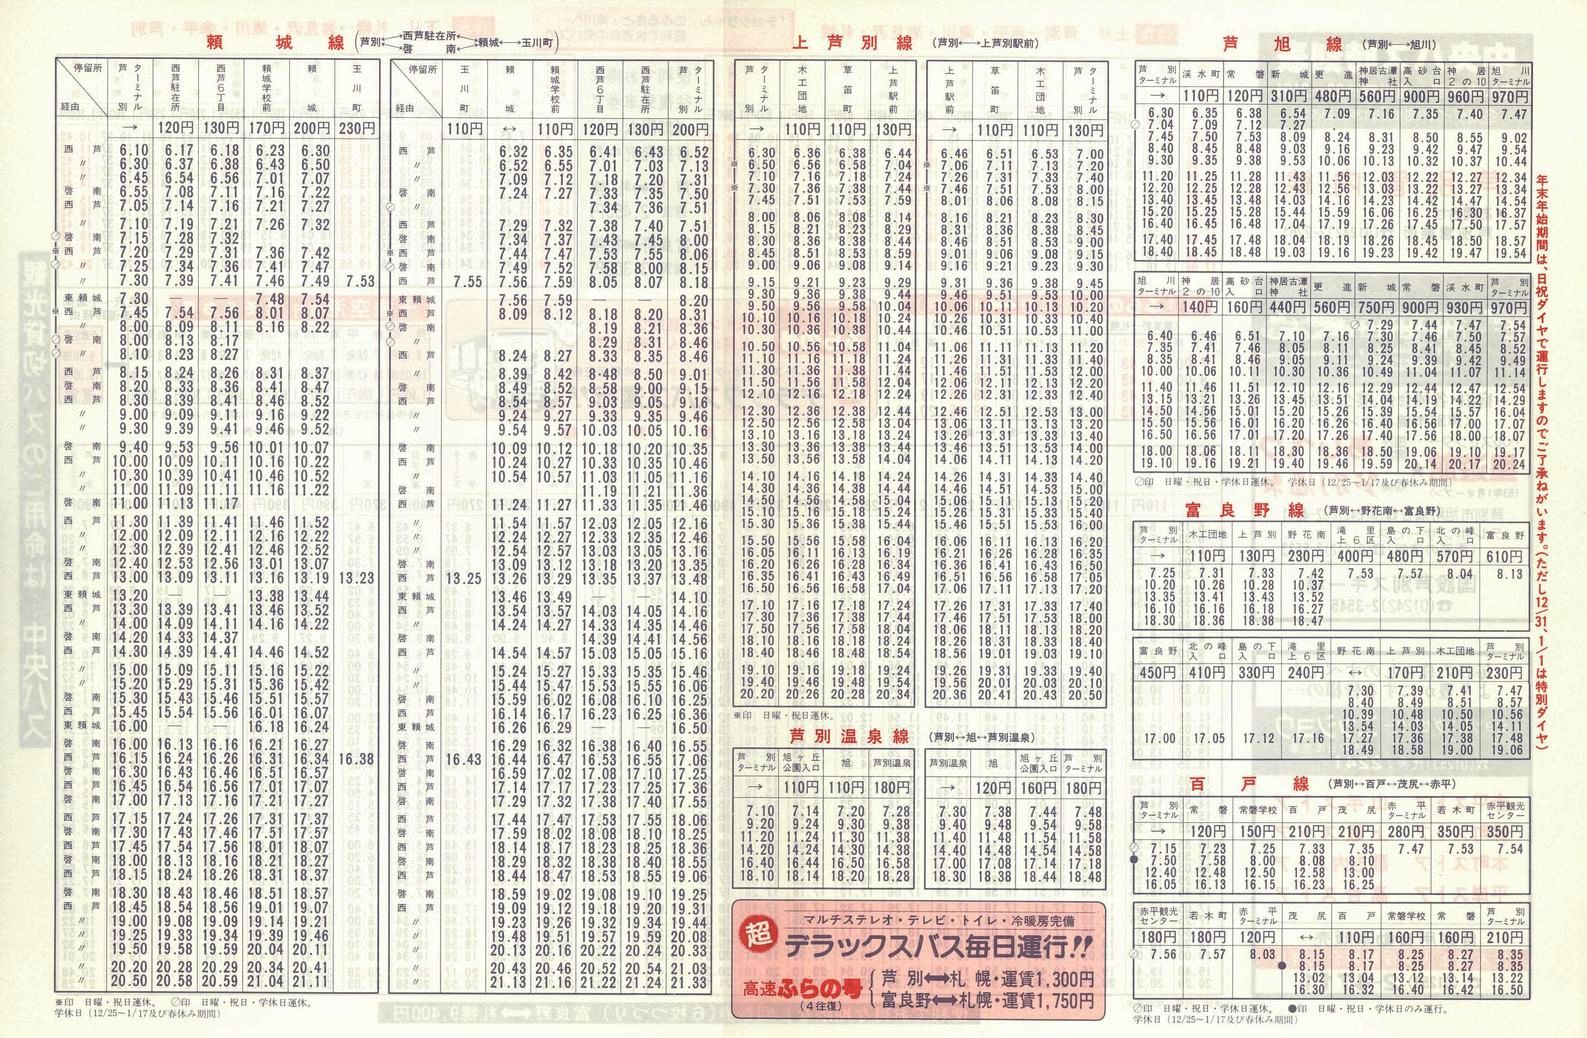 1987-12-01改正_北海道中央バス(空知)_芦別管内線時刻表裏面